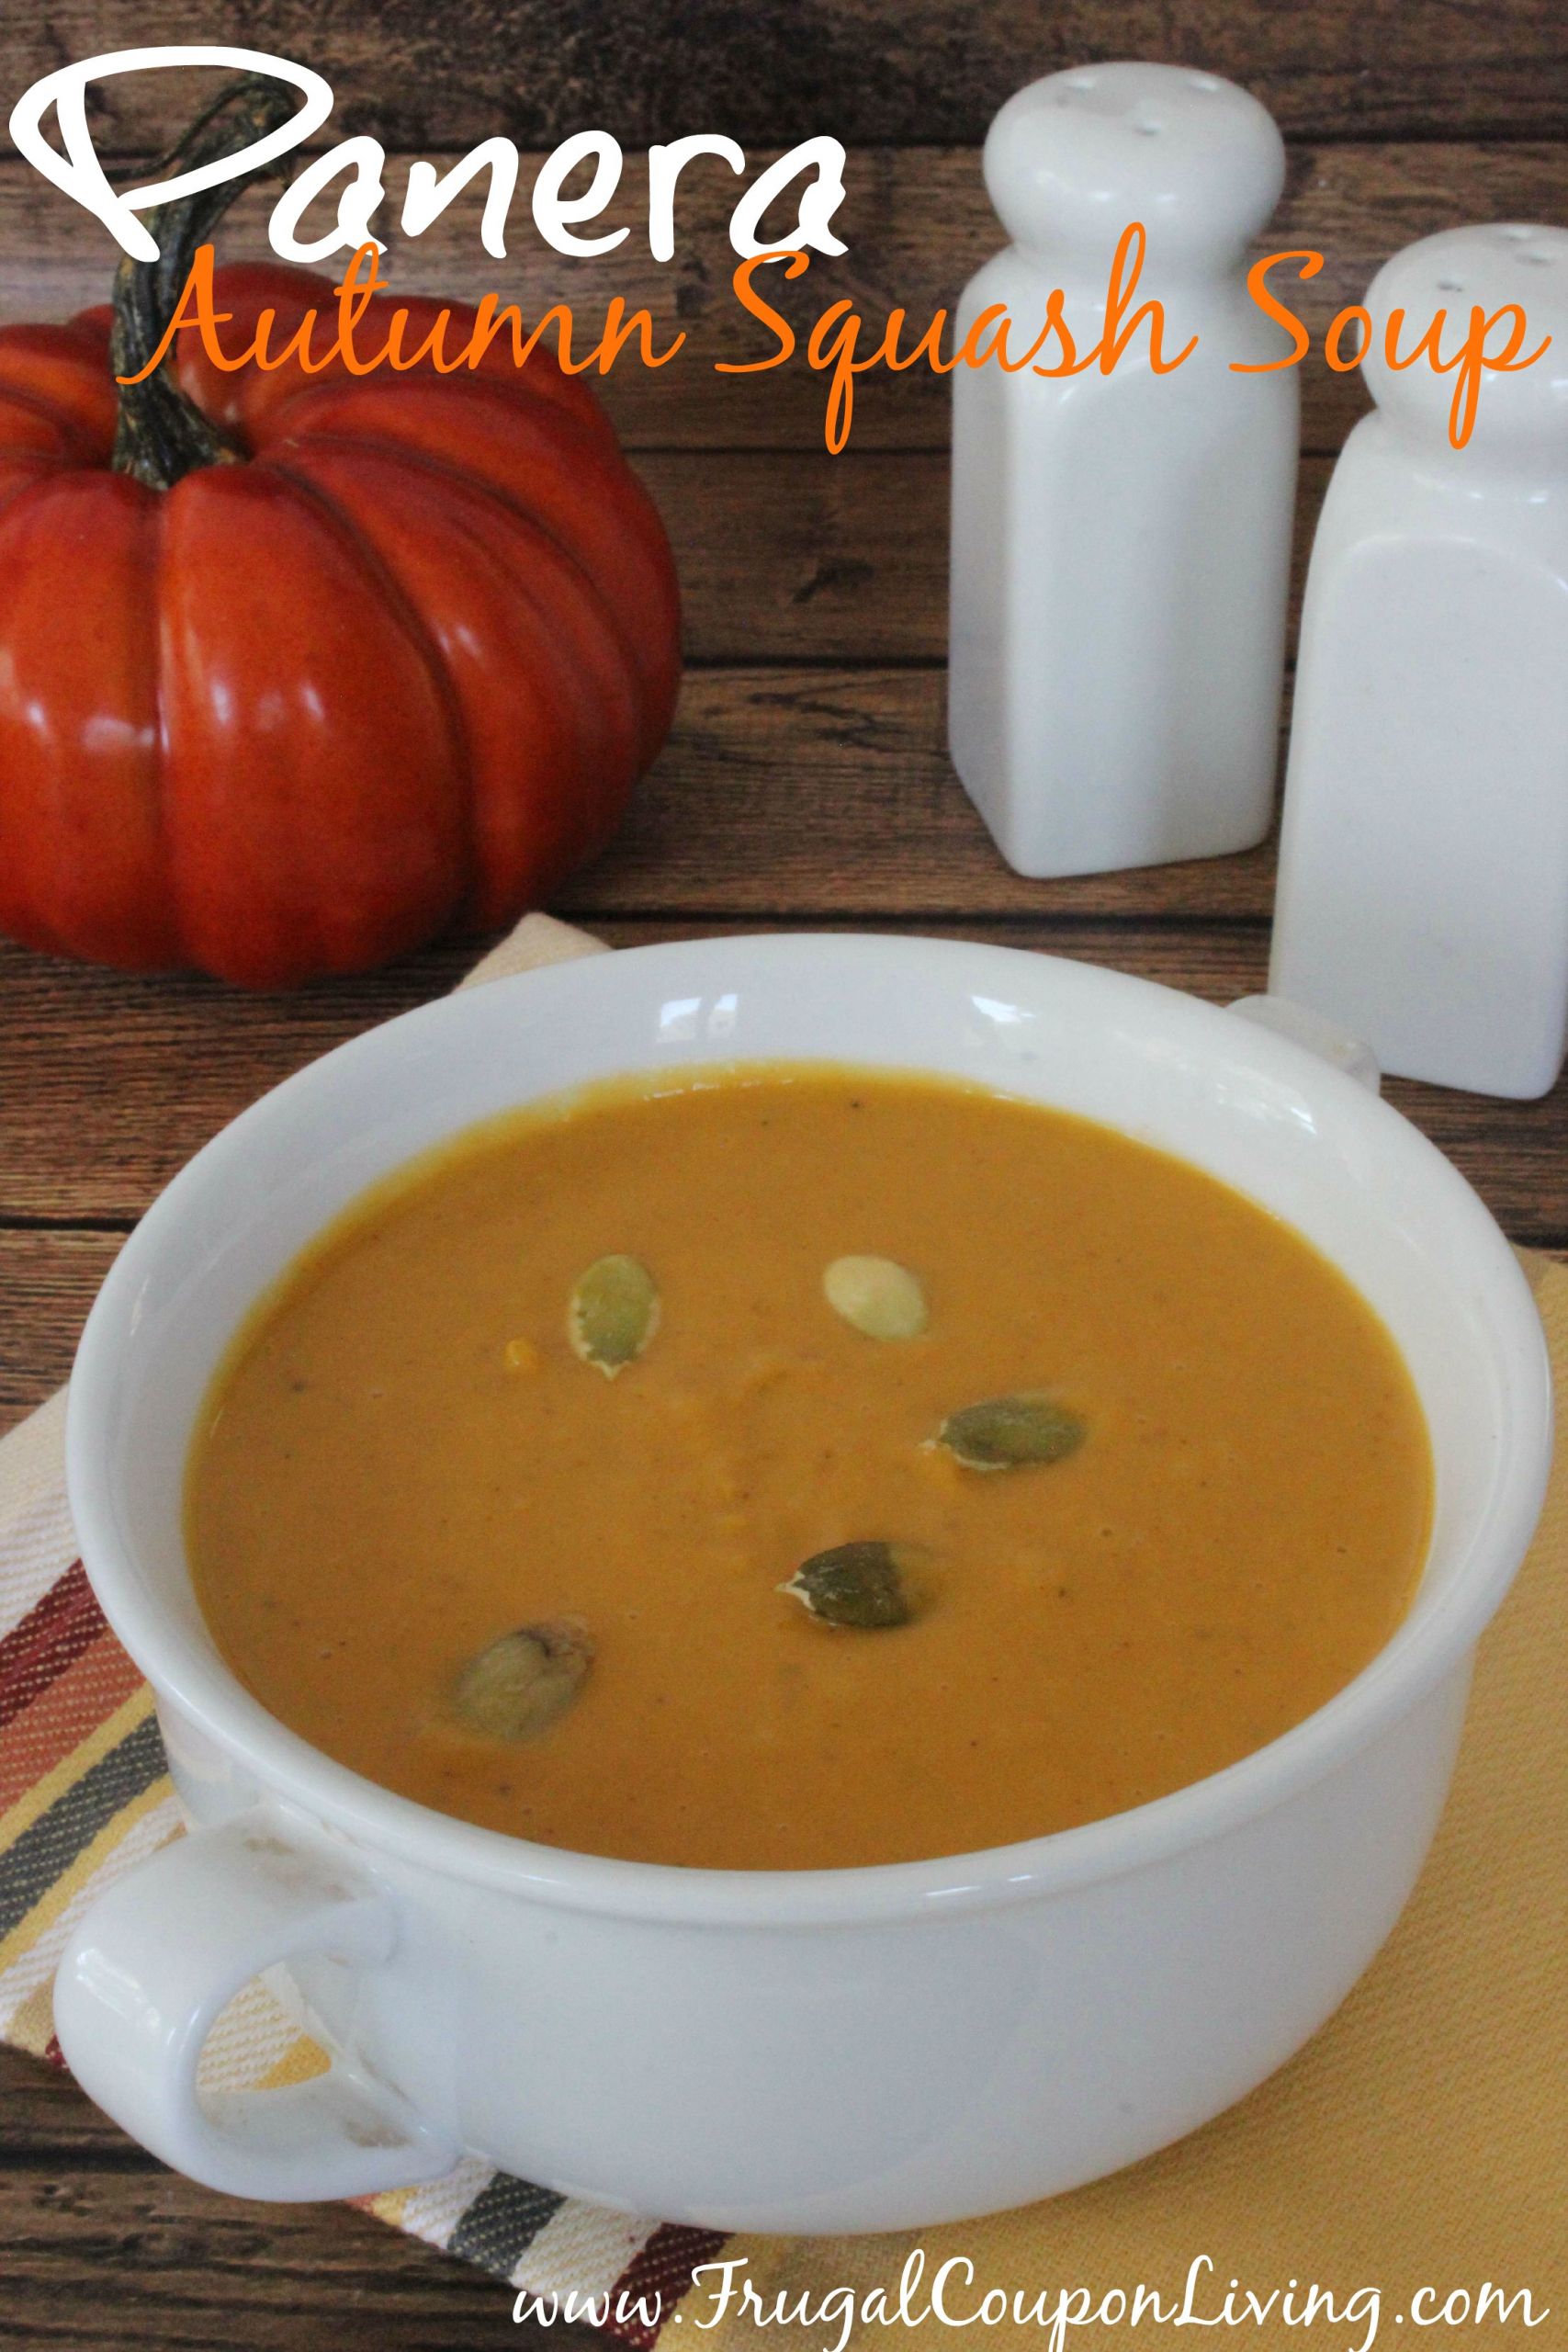 Mcalister's Autumn Squash Soup Recipe
 Copycat Panera Autumn Squash Soup Recipe